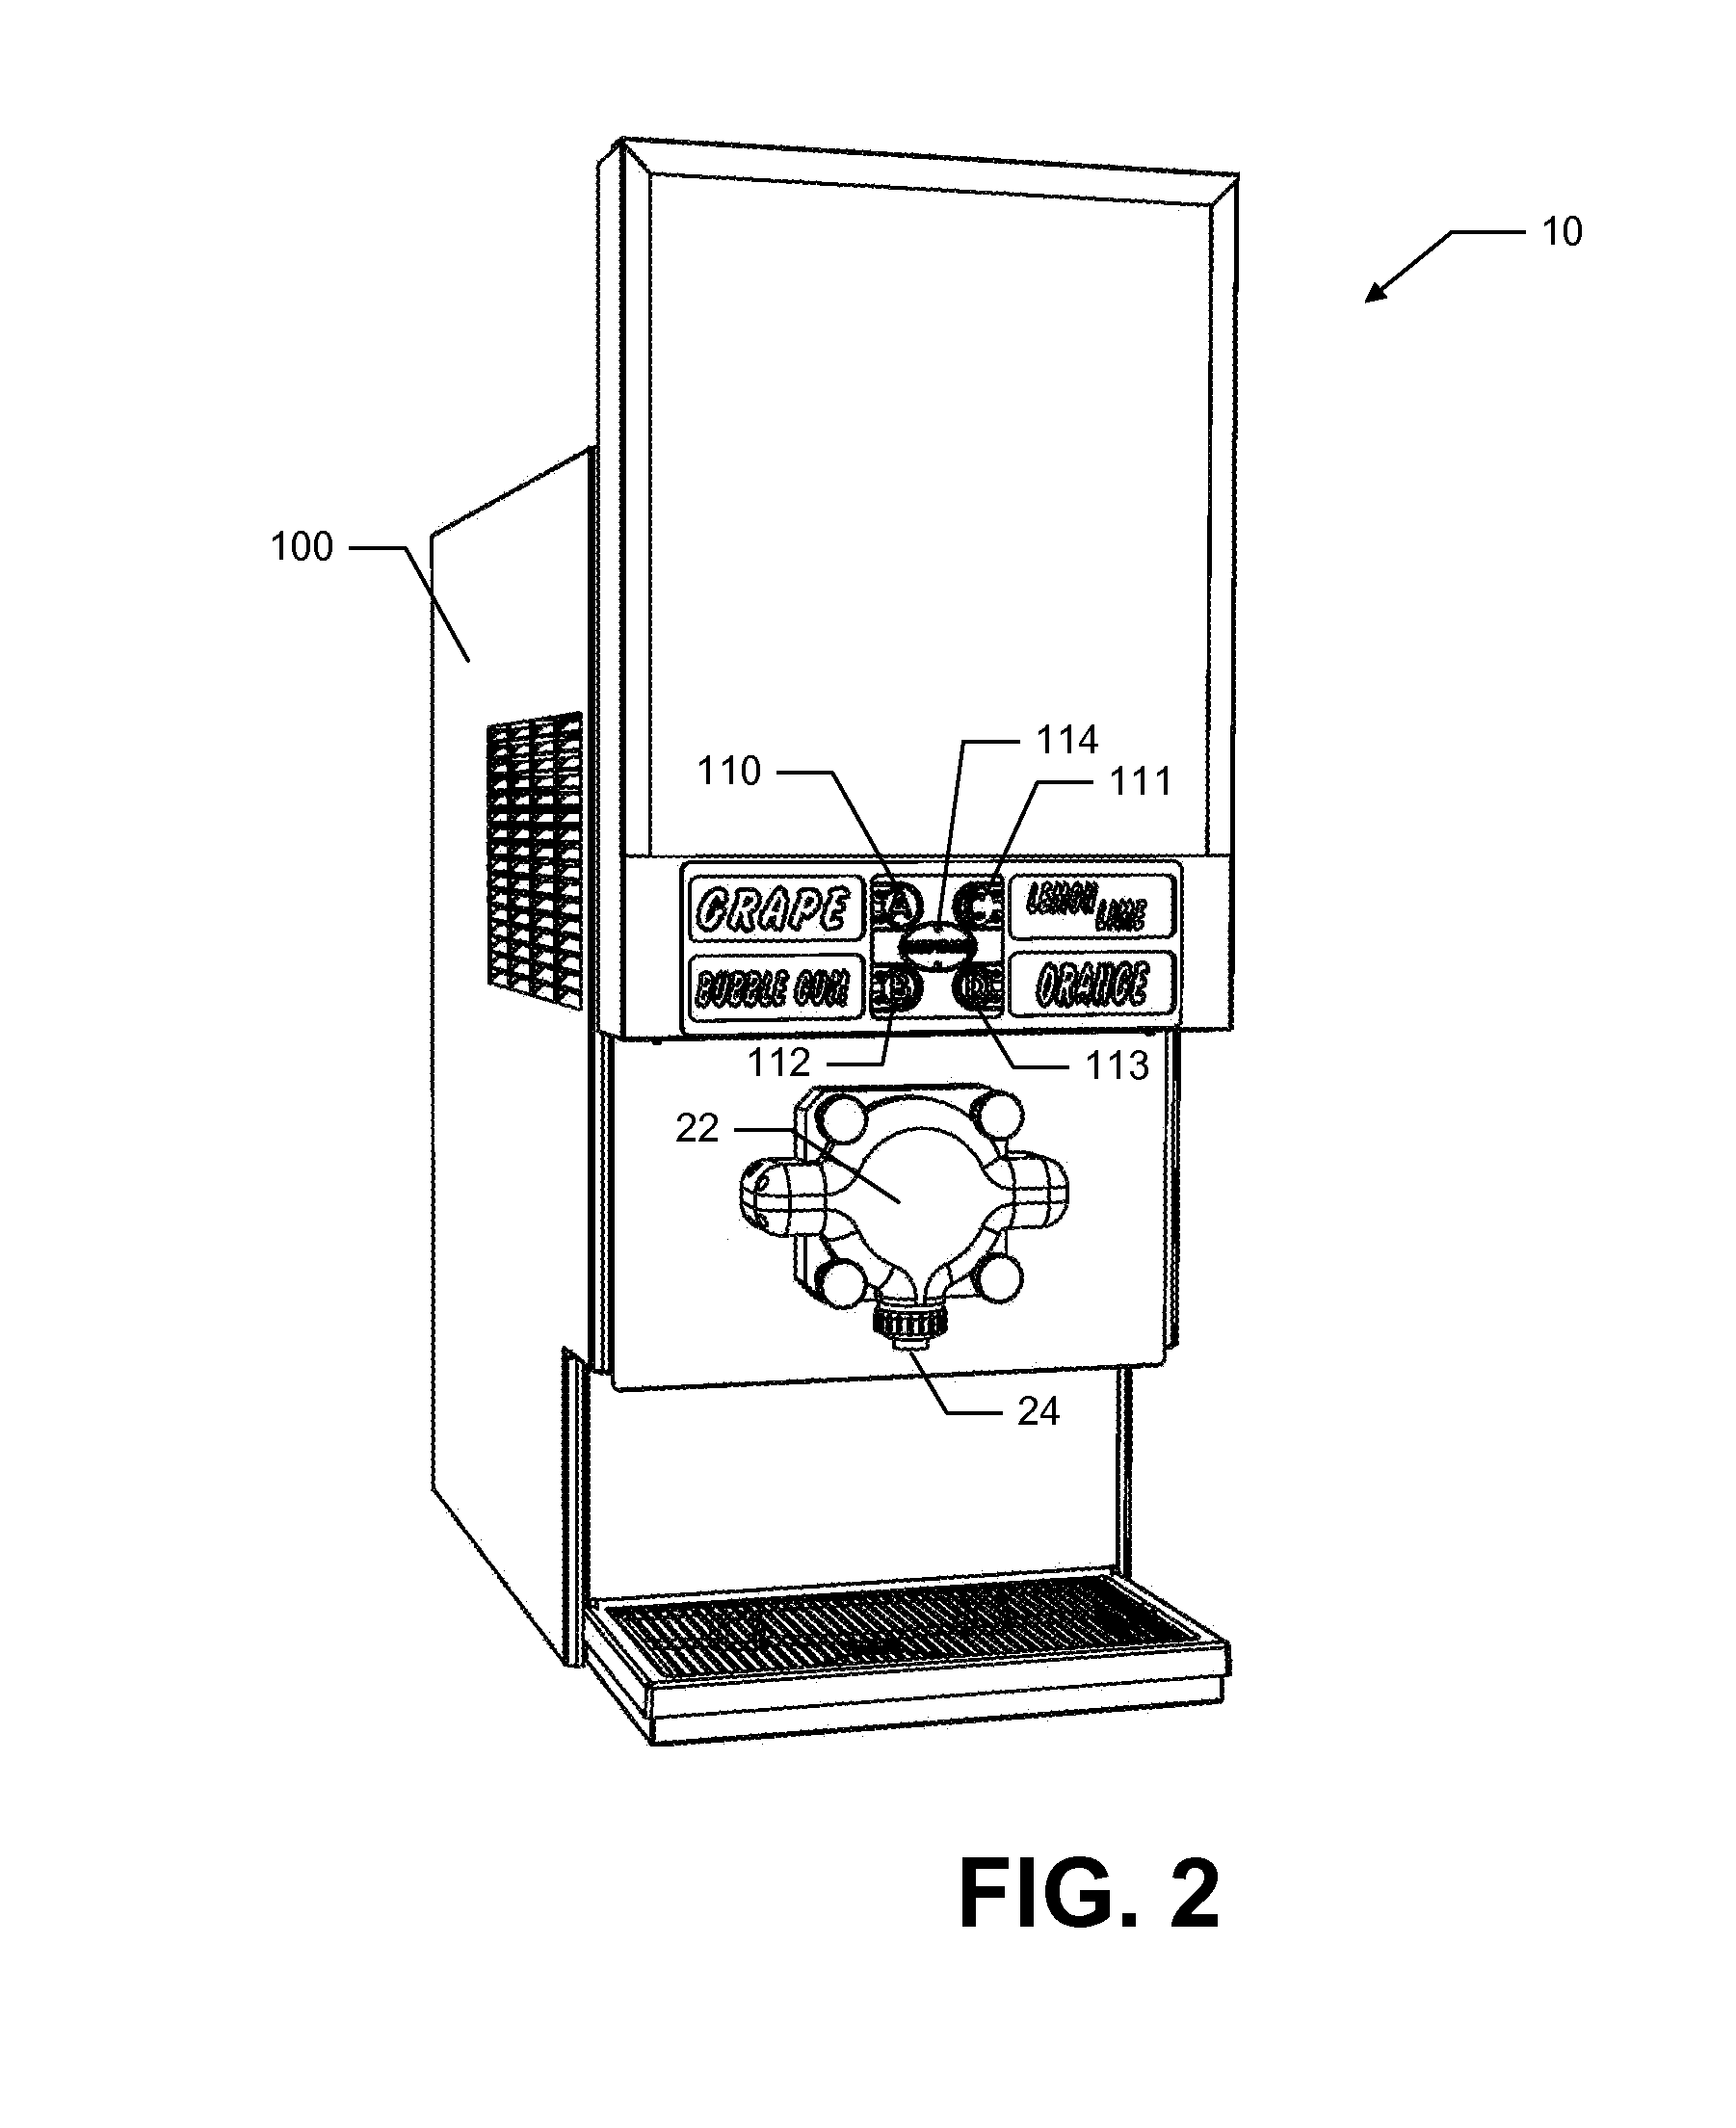 Multi-ingredient food dispensing machine